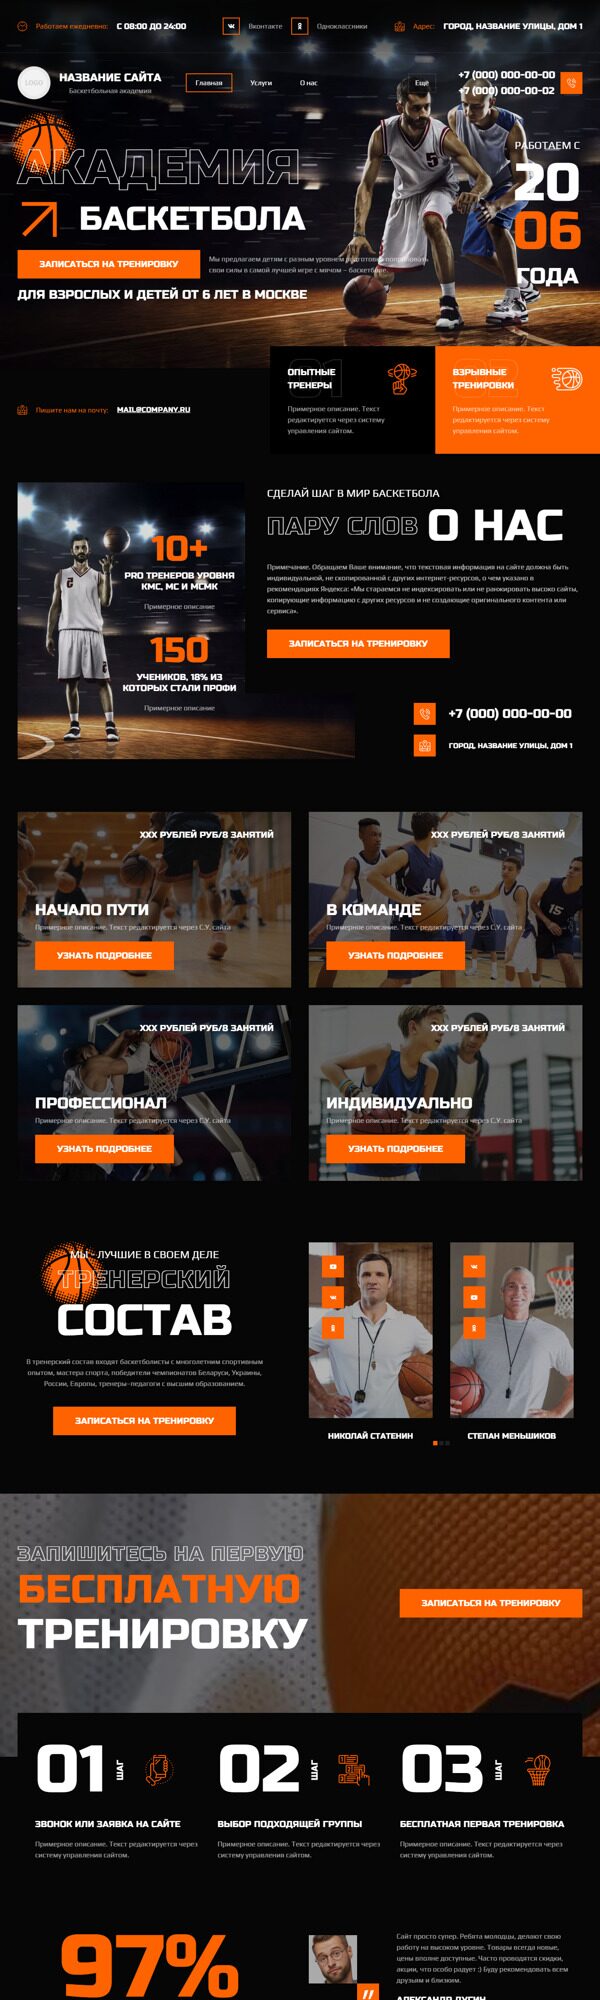 Готовый Сайт-Бизнес № 5702756 - Баскетбольная академия (Десктопная версия)